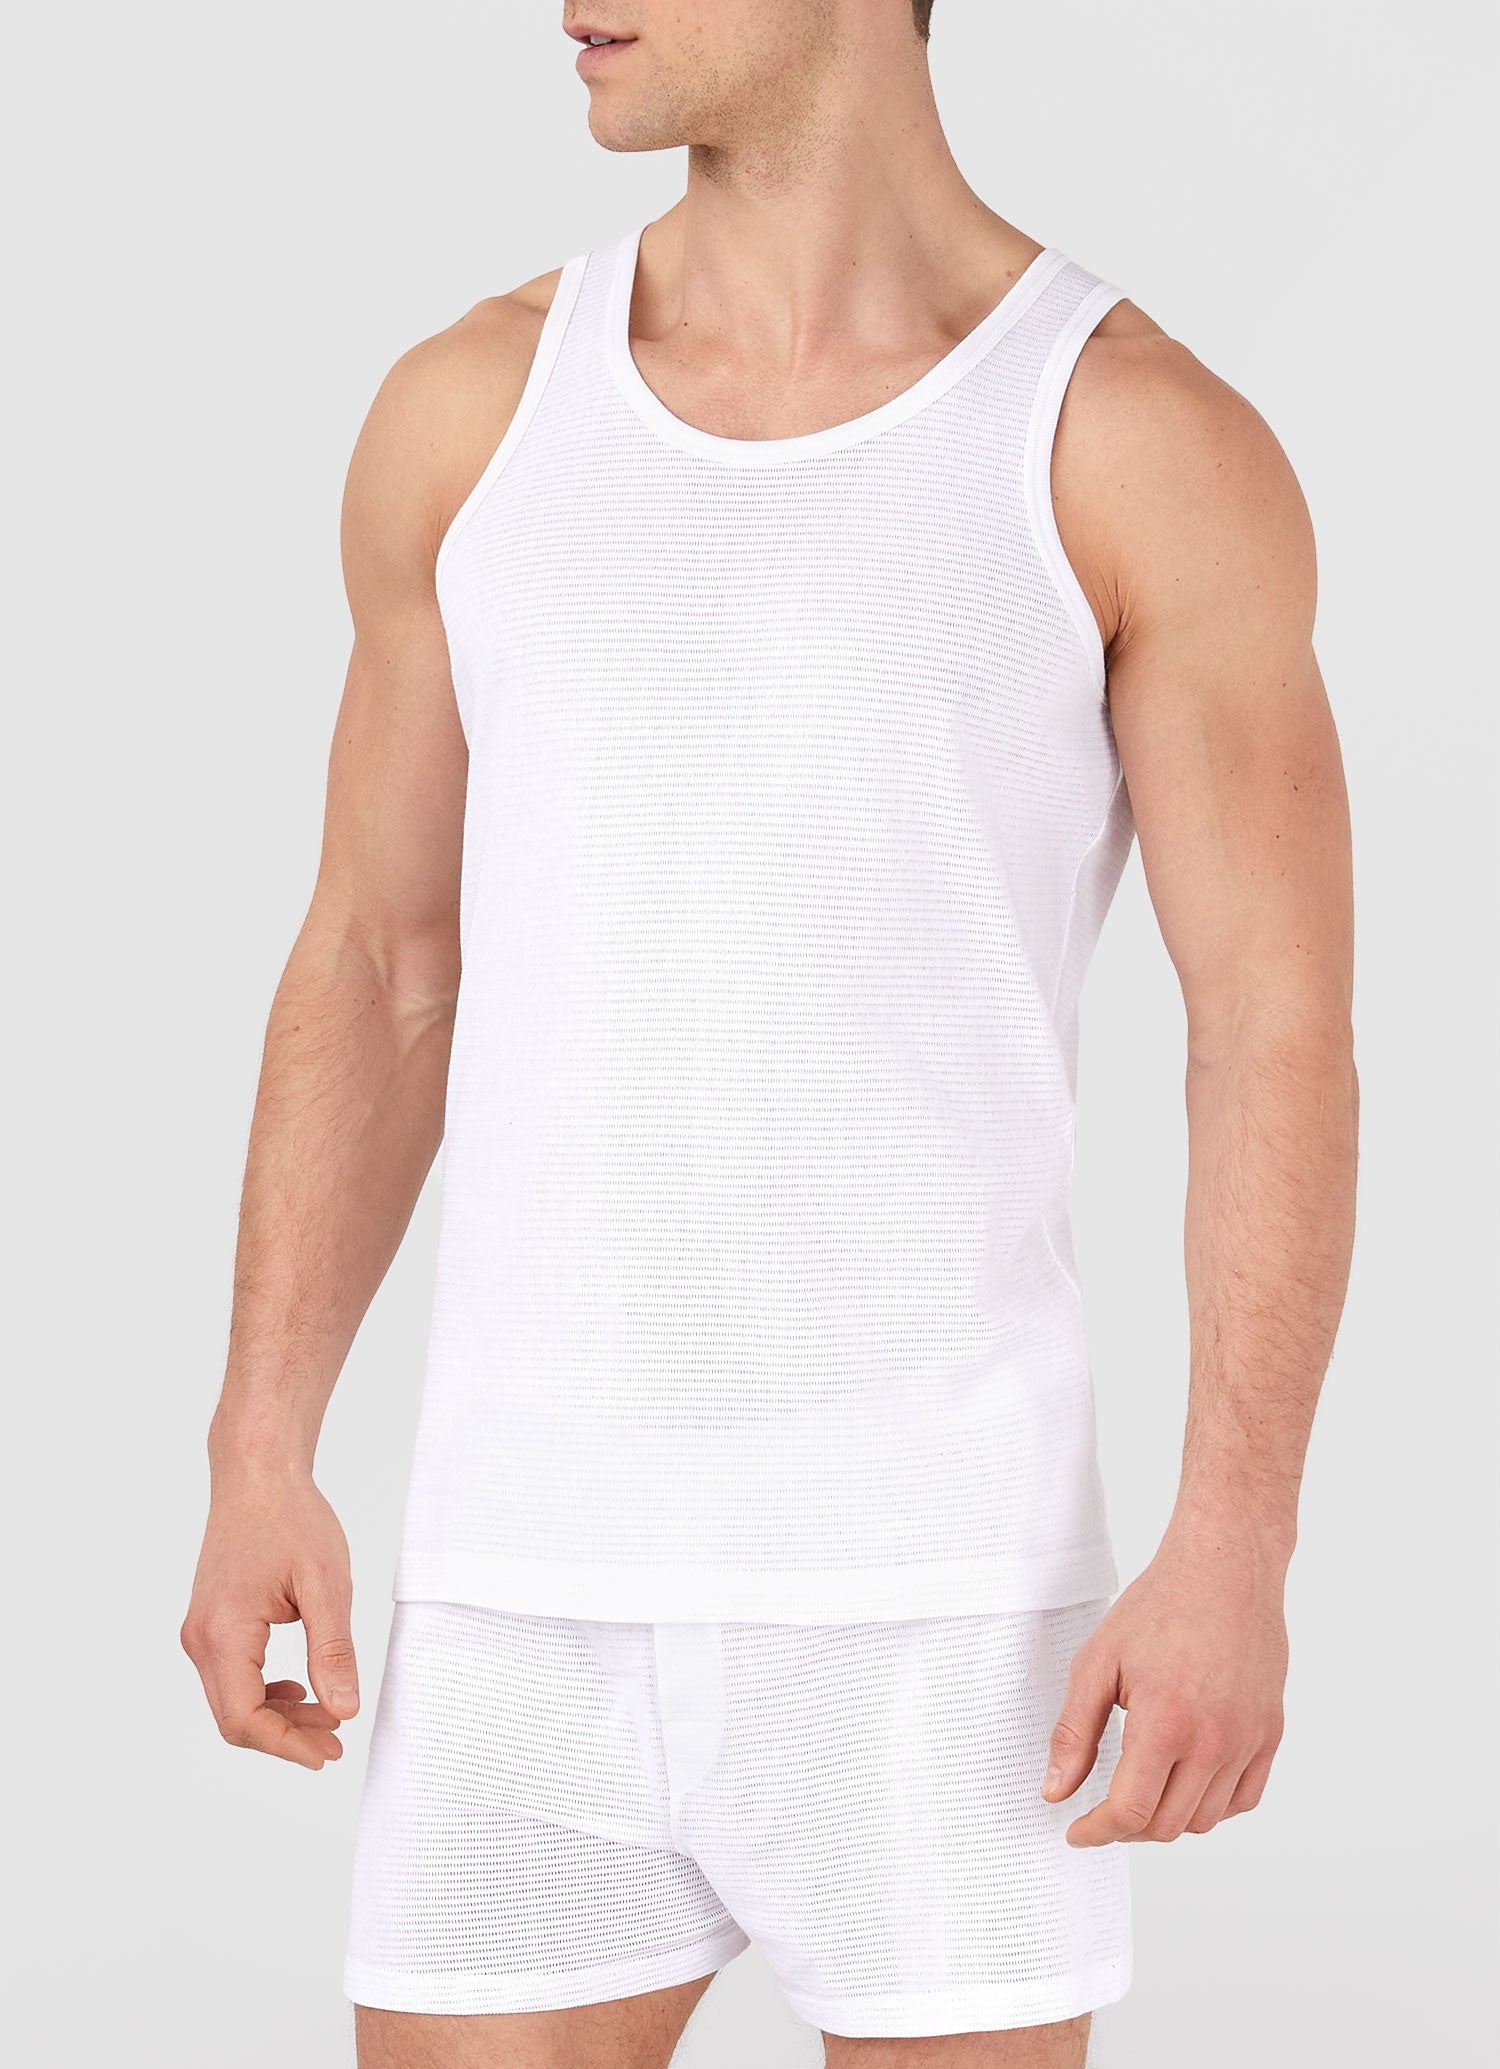 Cellular Cotton Underwear Vest - 2